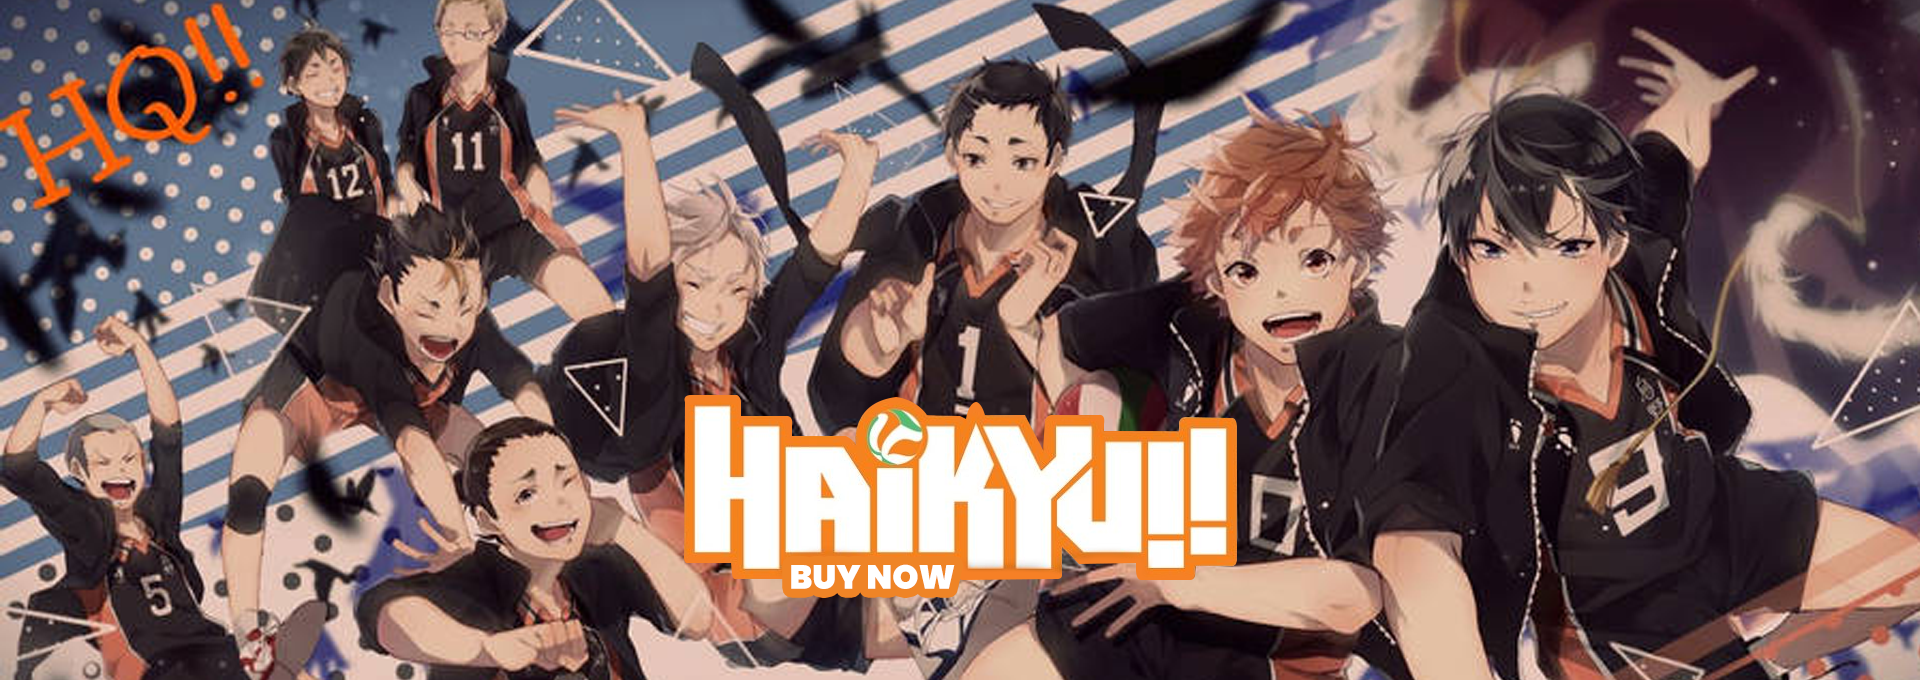 마크 on X: BREAKING: Haikyuu Season 5 TV Anime has been confirmed! 🔥 More  information soon! Stay tuned! Source: Collabo Cafe ✨   / X